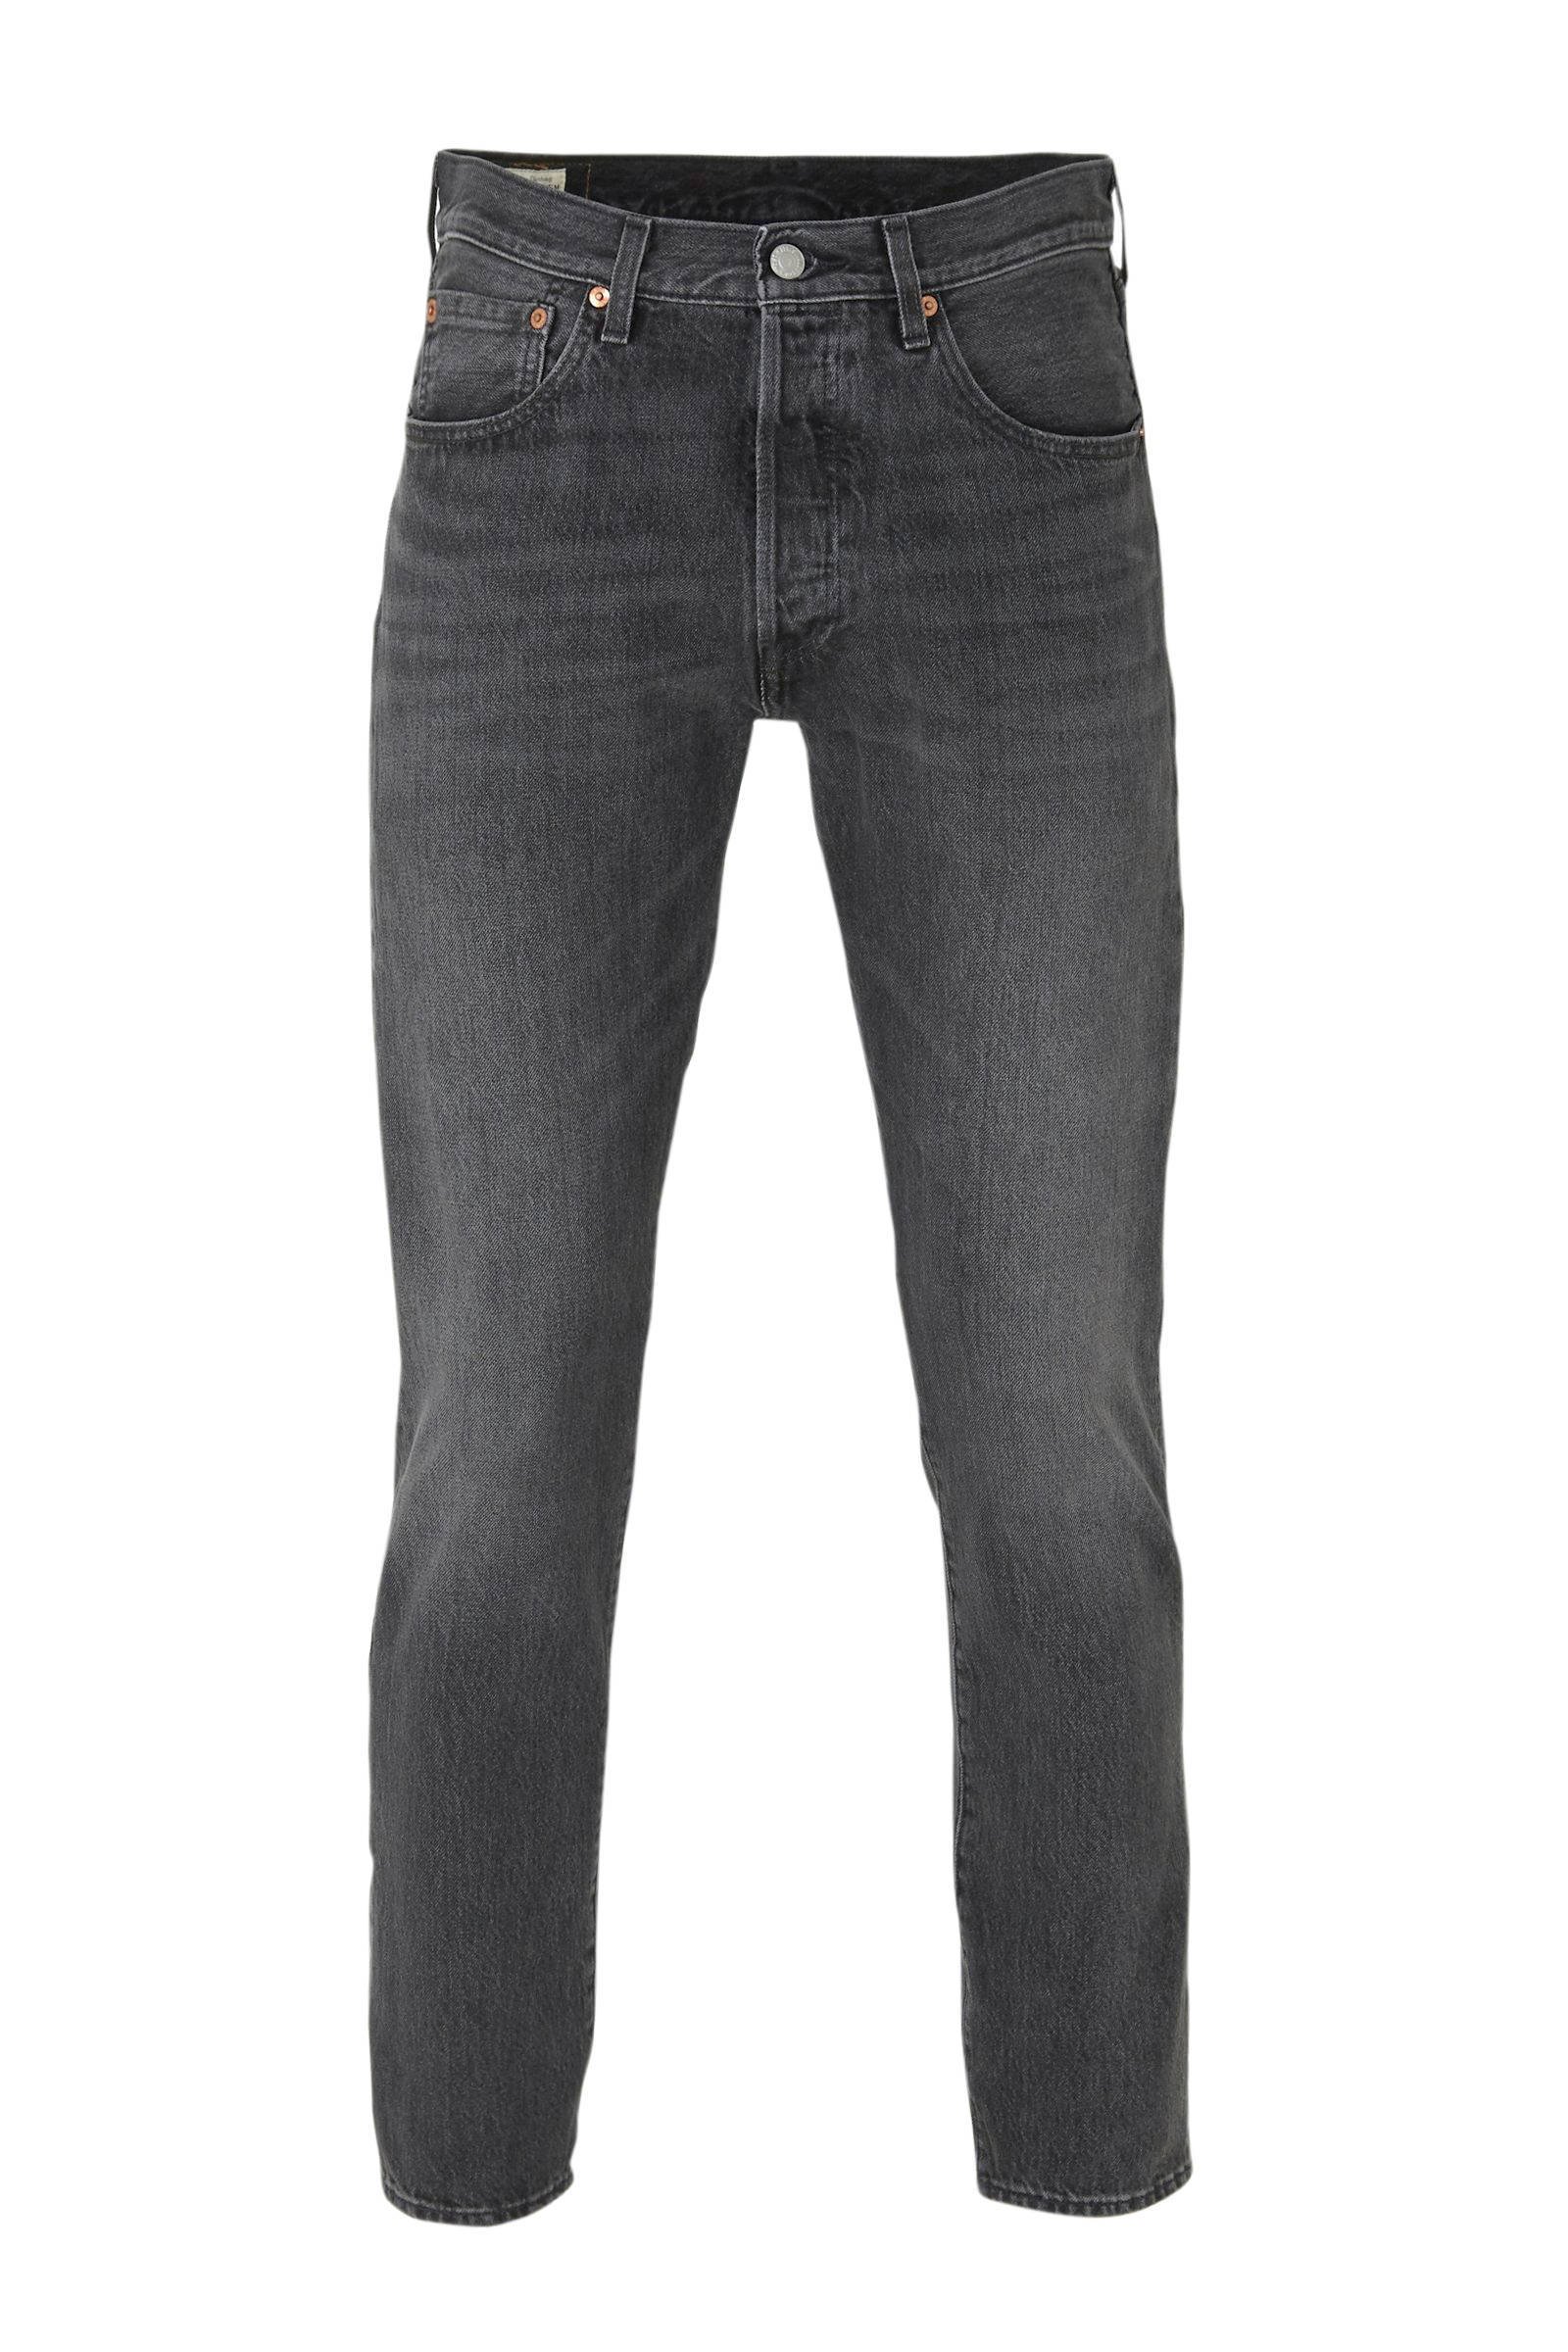 501 skinny jeans grey